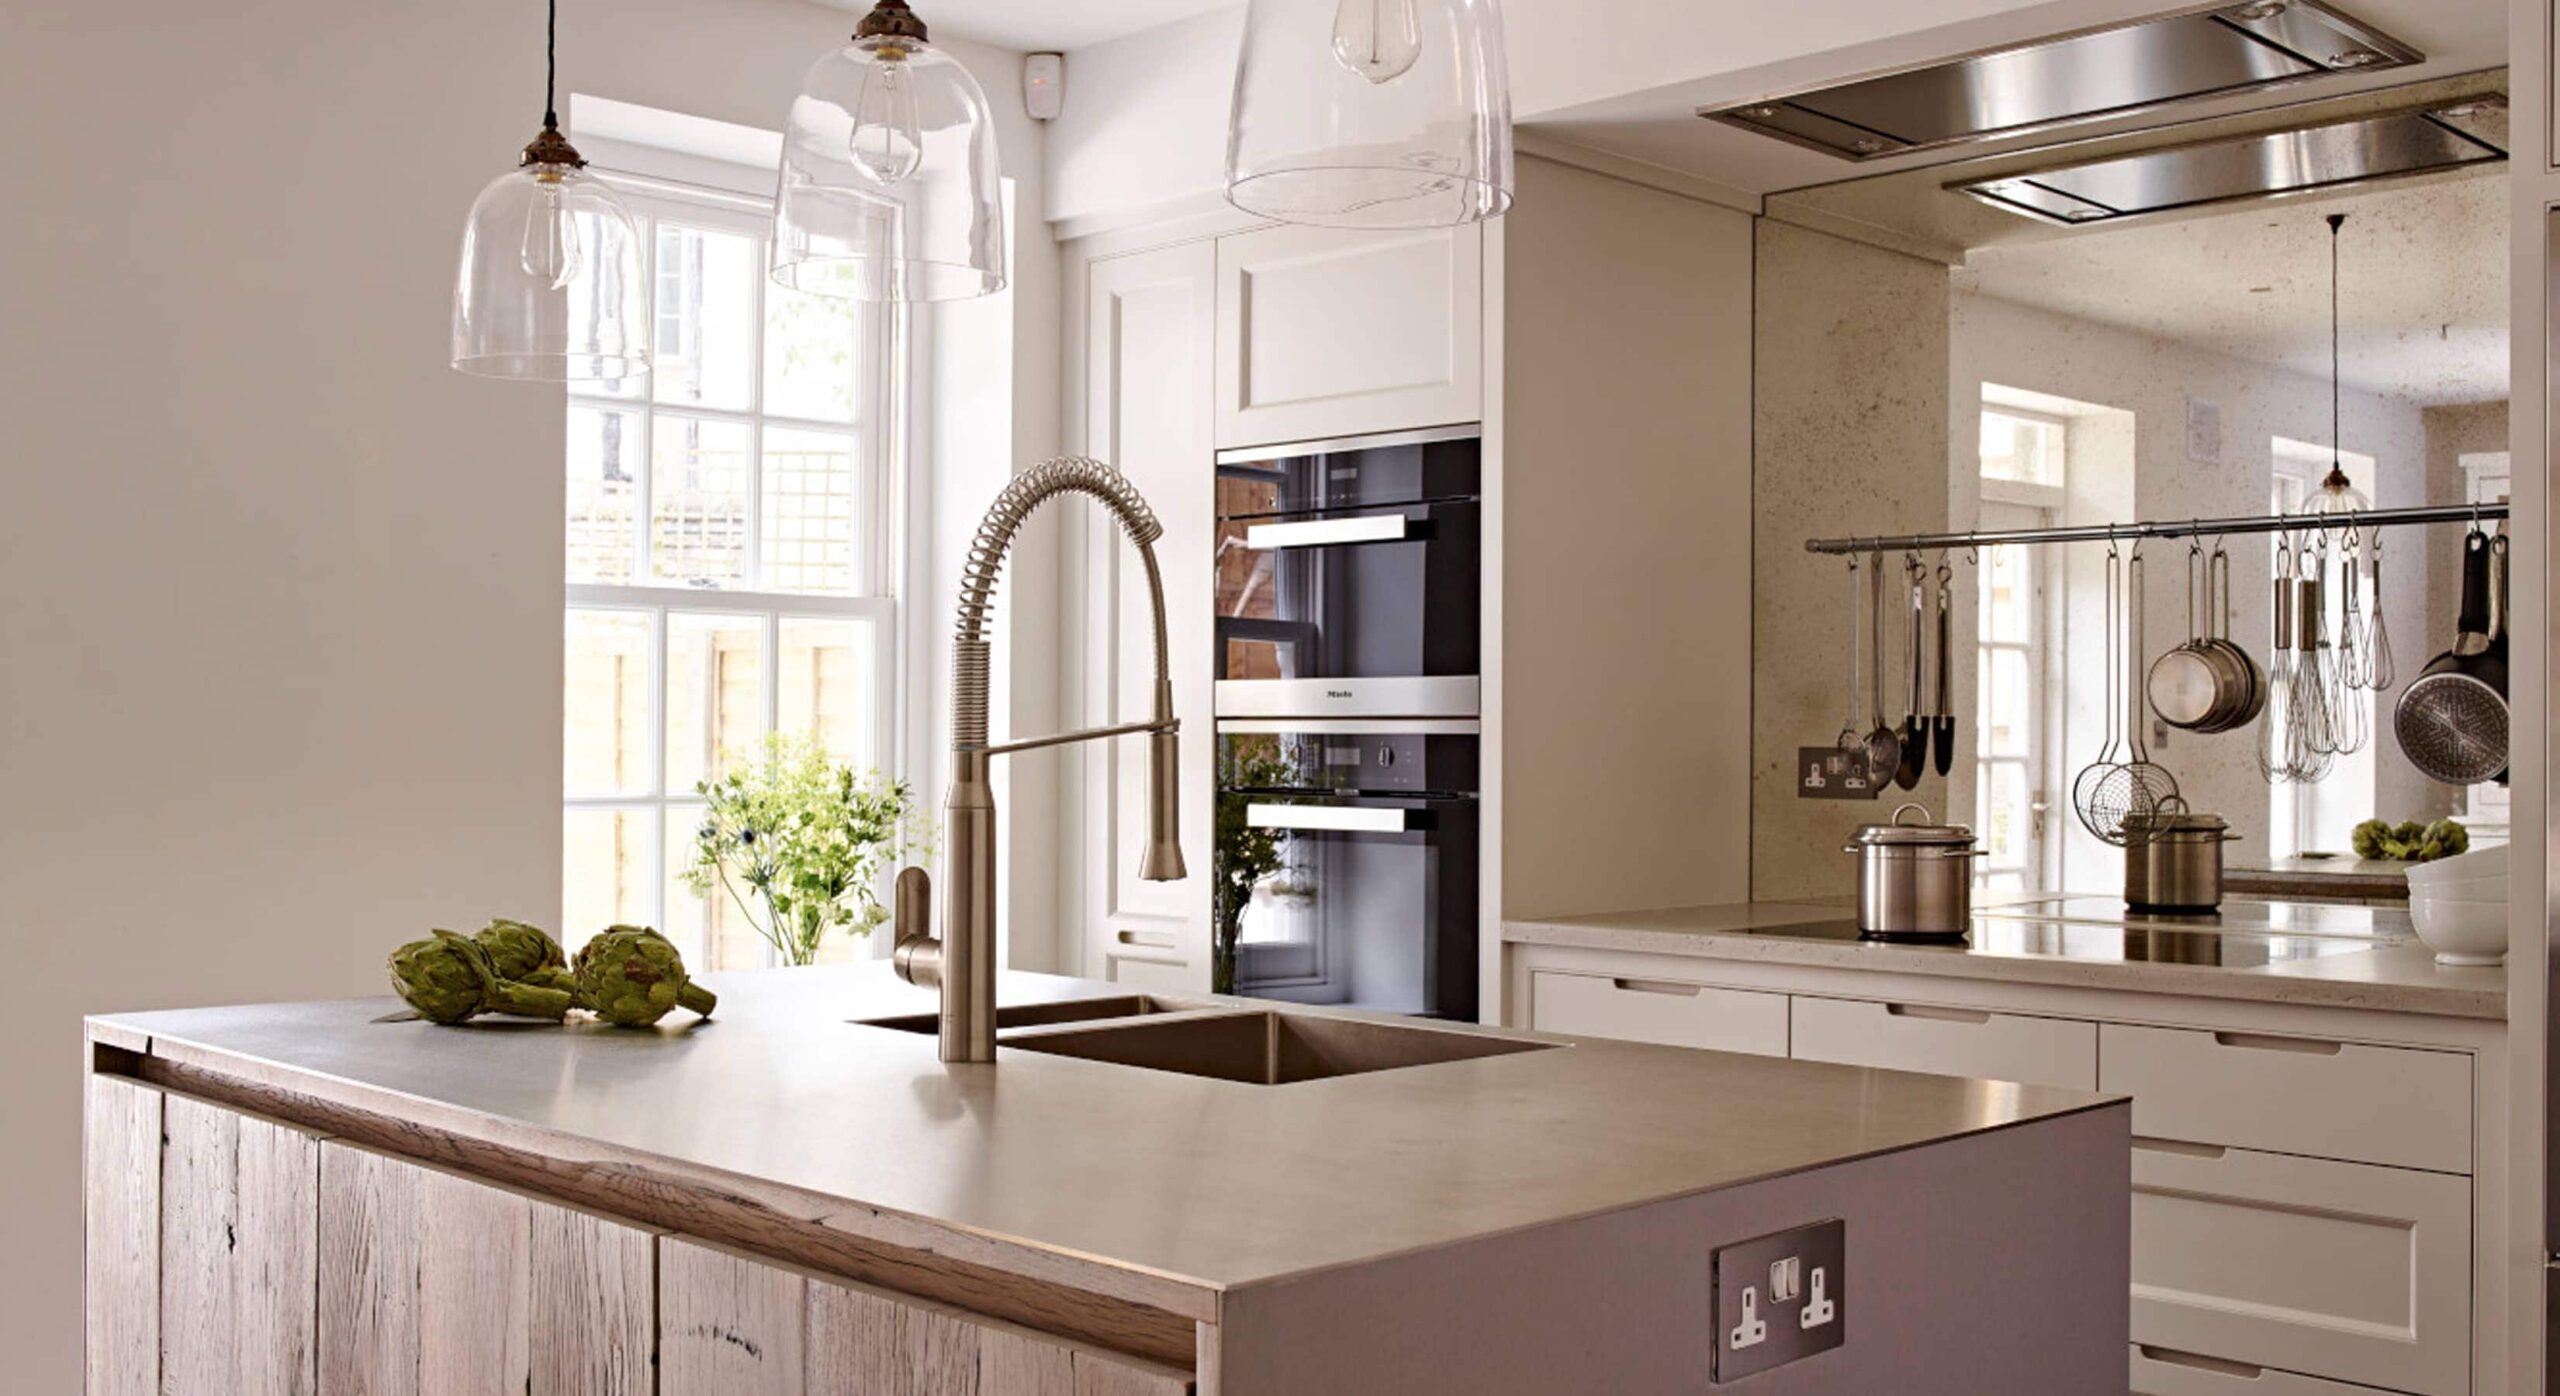 Modern kitchen concept with mirrored splashback